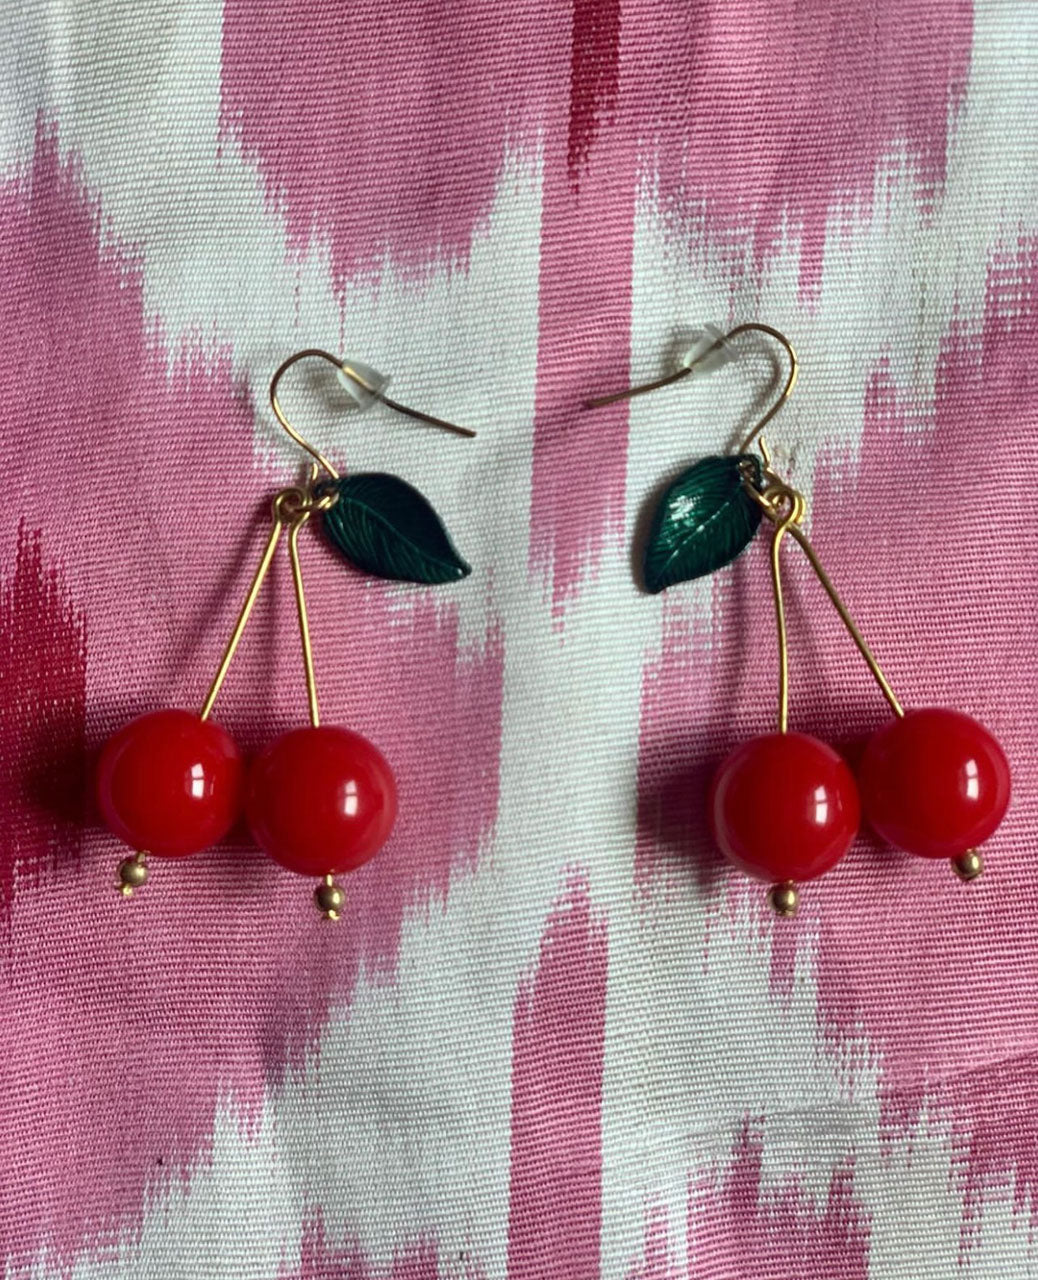 Sweet cherries earrings